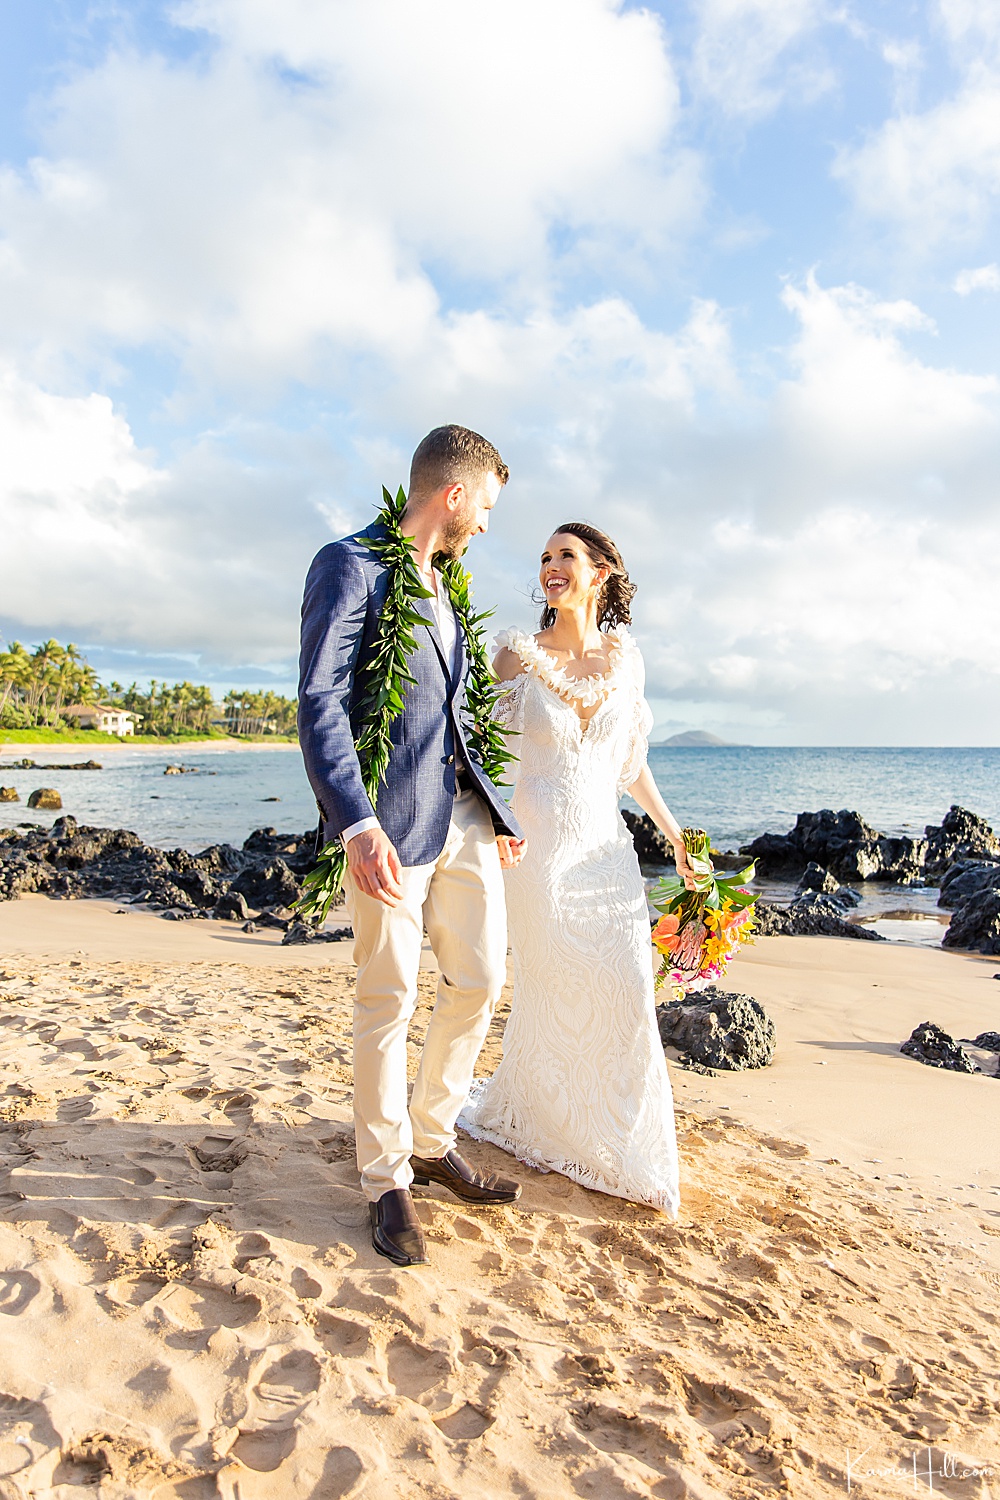 Surprise, We're Maui'd! - Andrea & Stephen's Destination Wedding in Maui